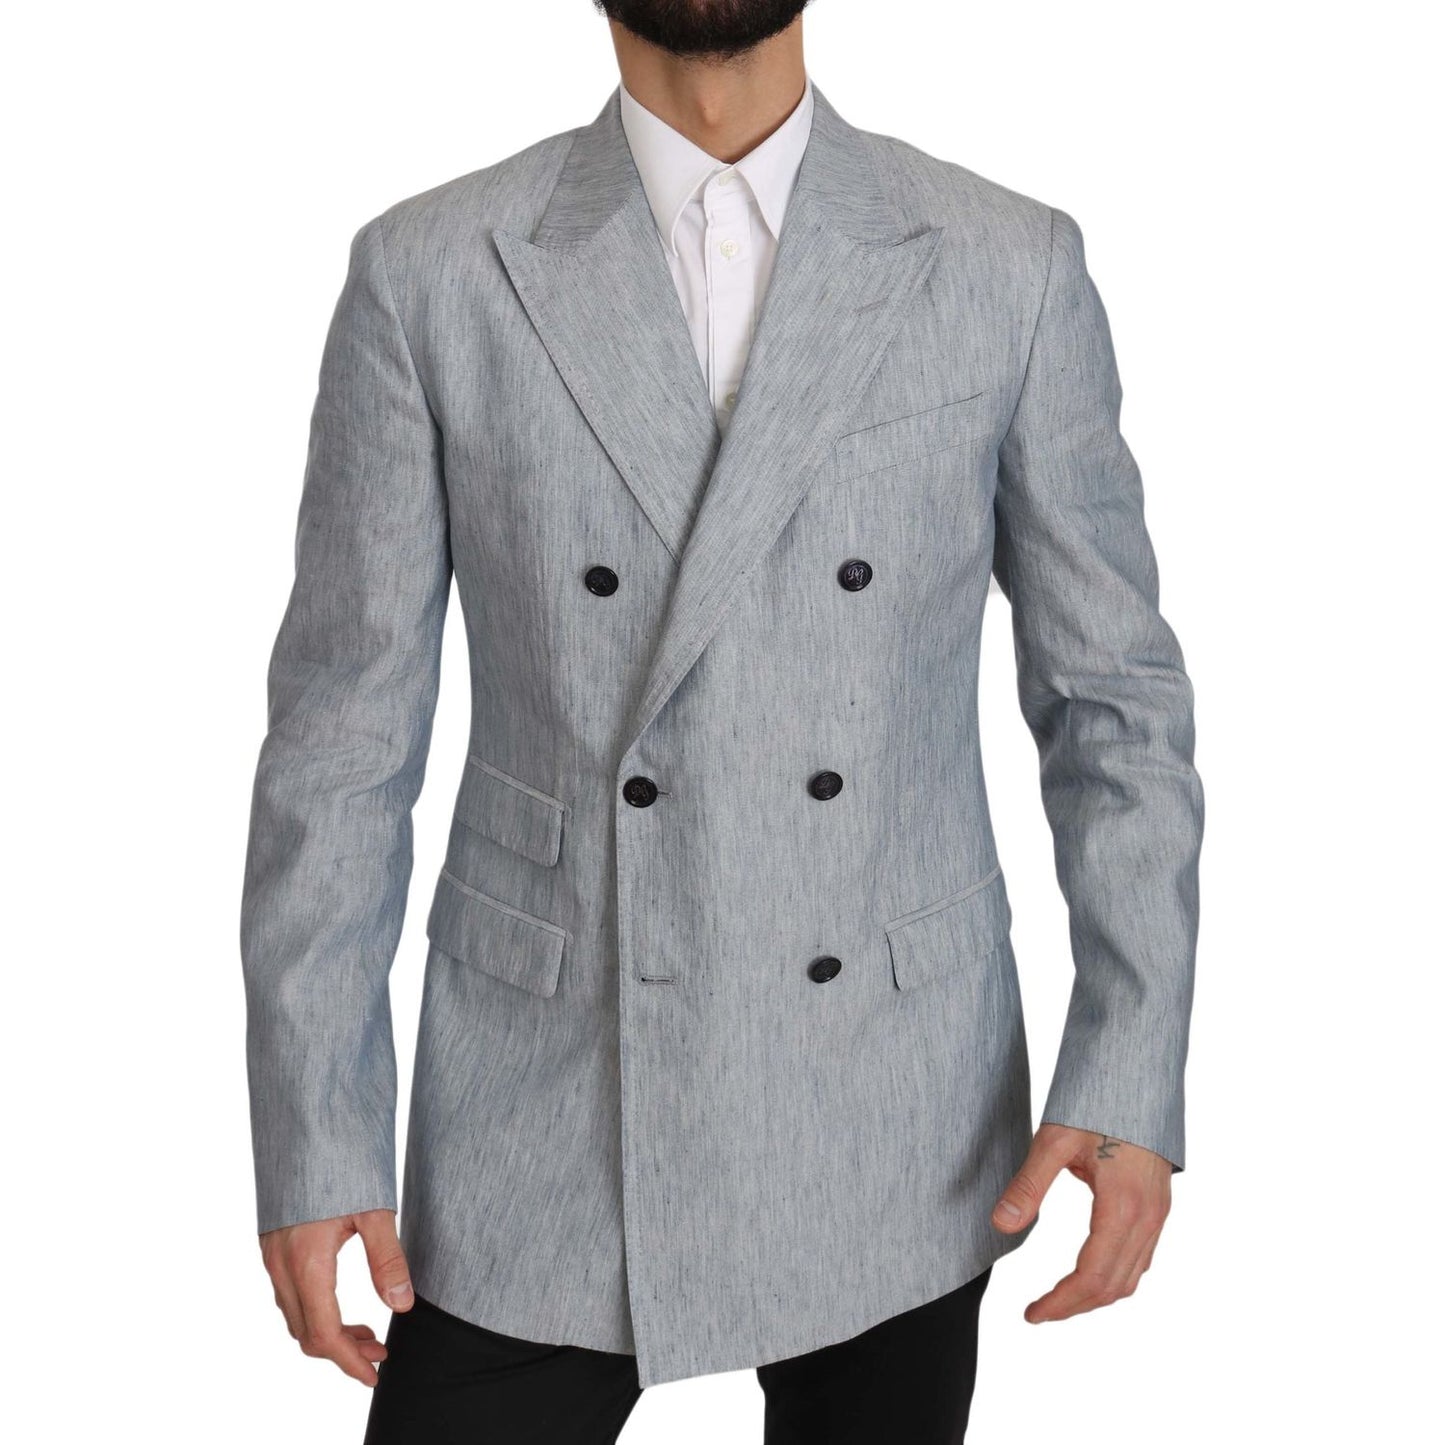 Dolce & Gabbana Elegant Light Blue Double Breasted Blazer blue-flax-napoli-jacket-coat-blazer IMG_0380-scaled.jpg